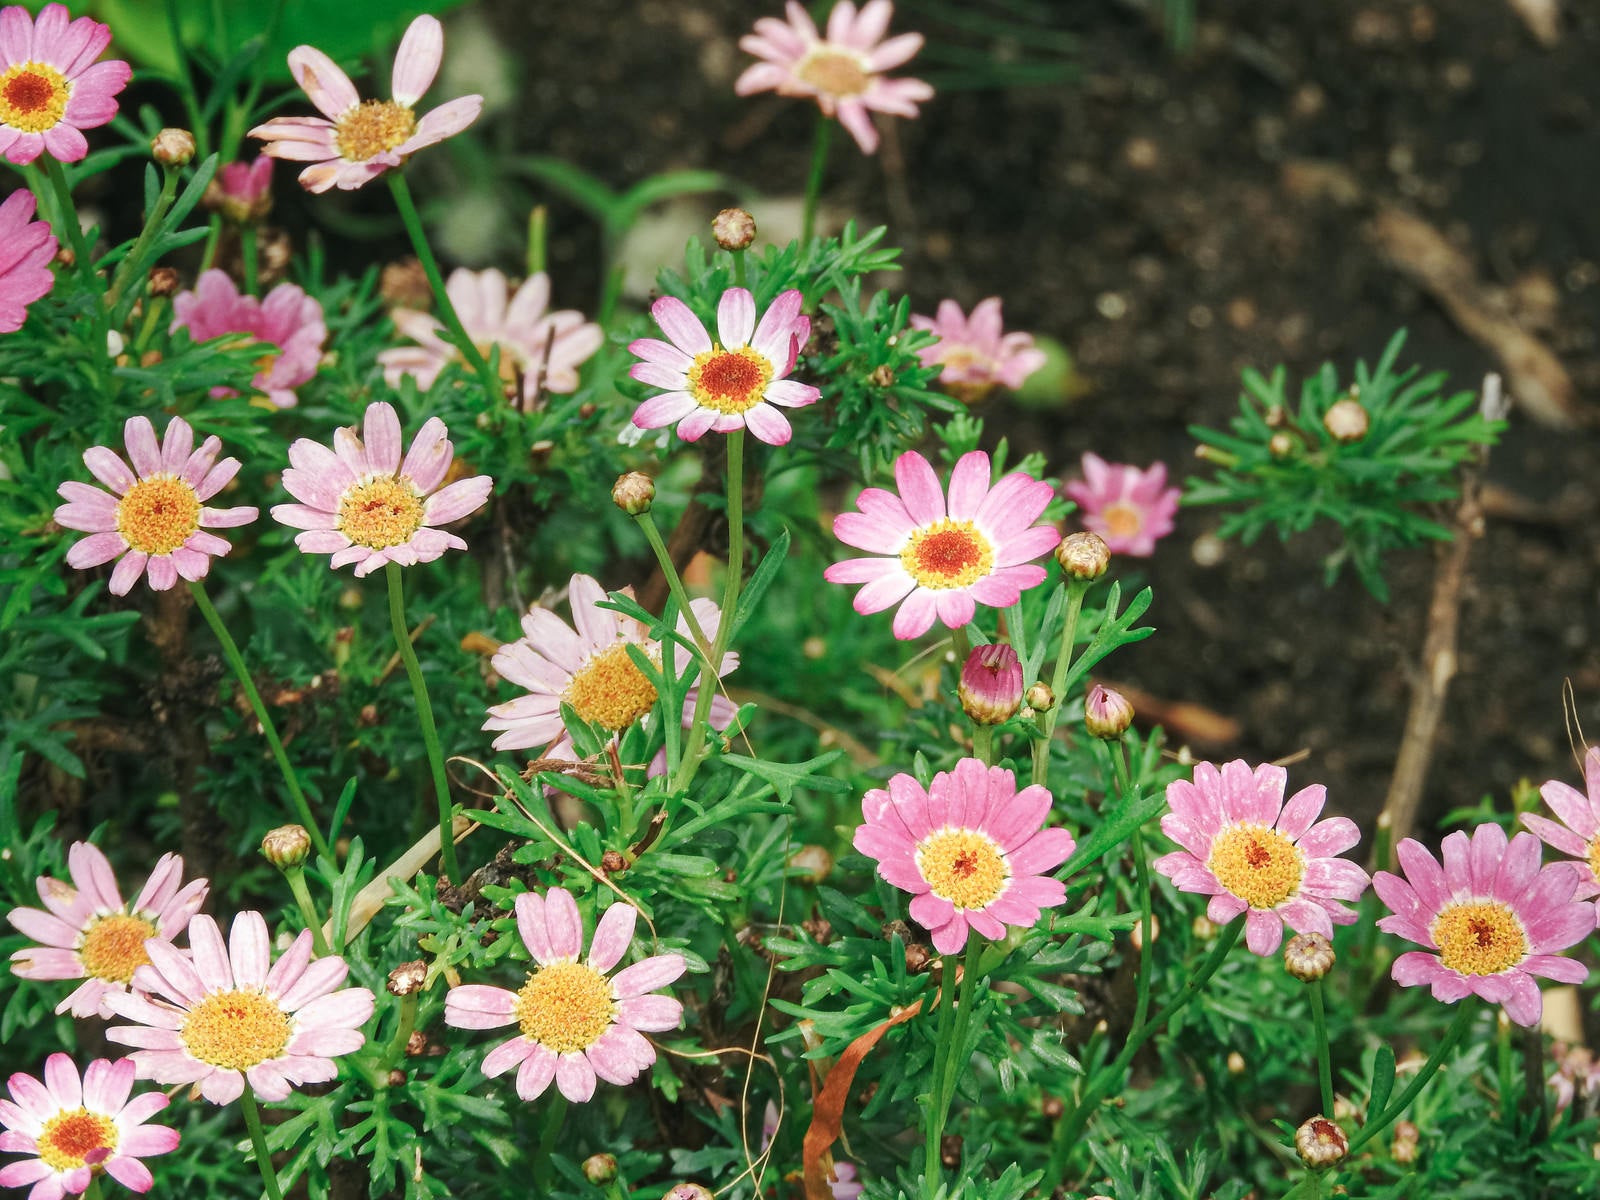 「色とりどりに咲くマーガレットの花々」の写真